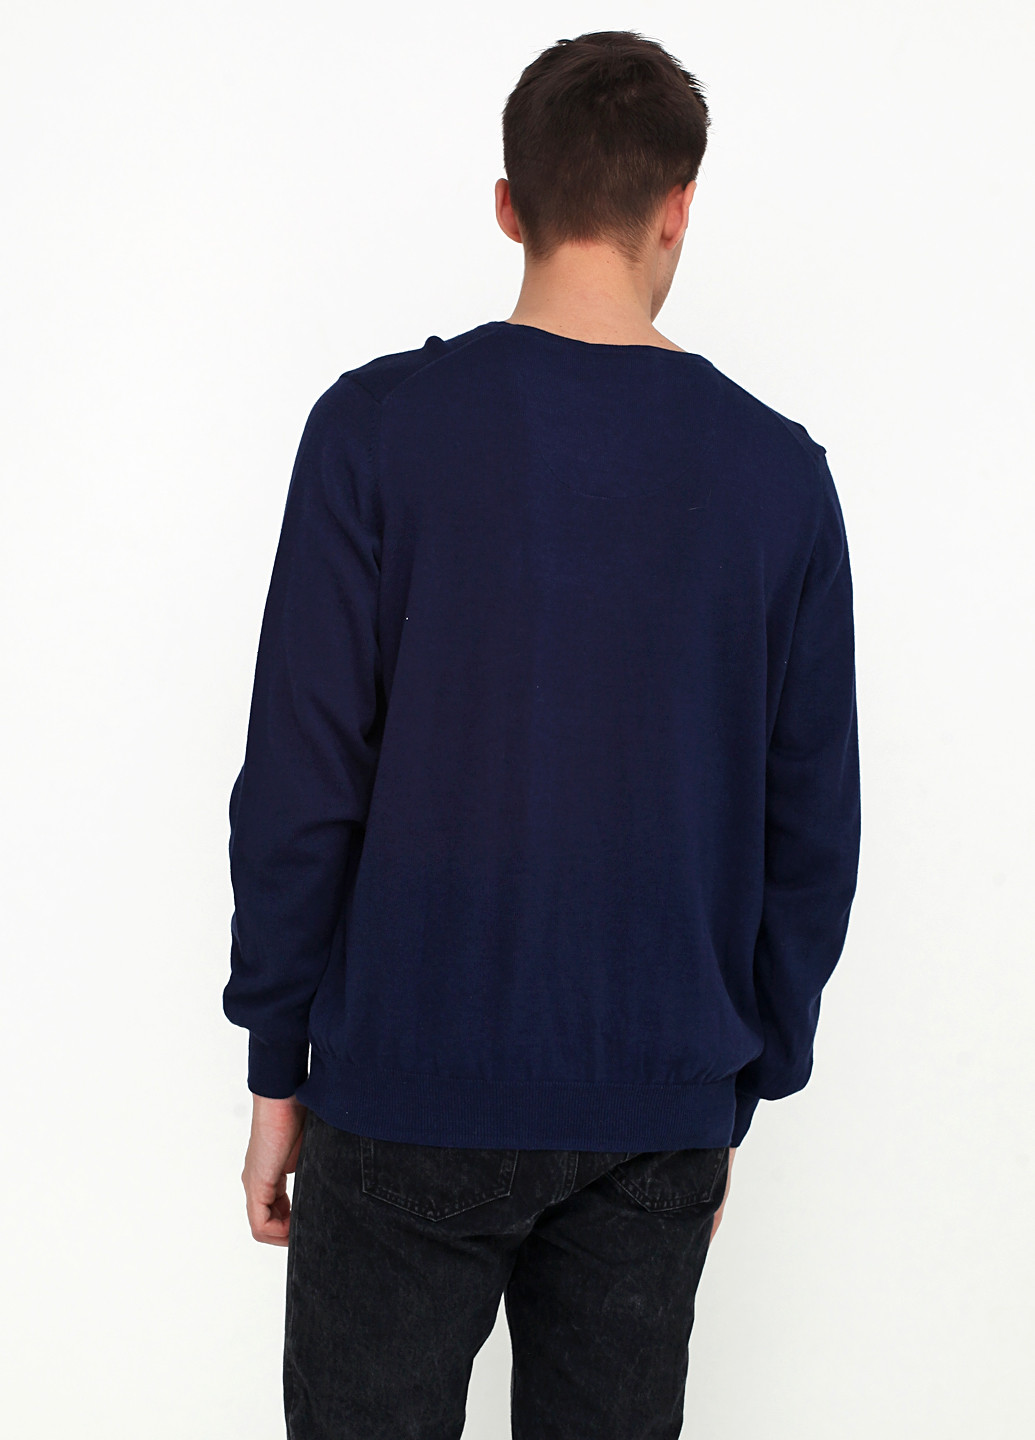 Темно-синий демисезонный пуловер пуловер Nobel League